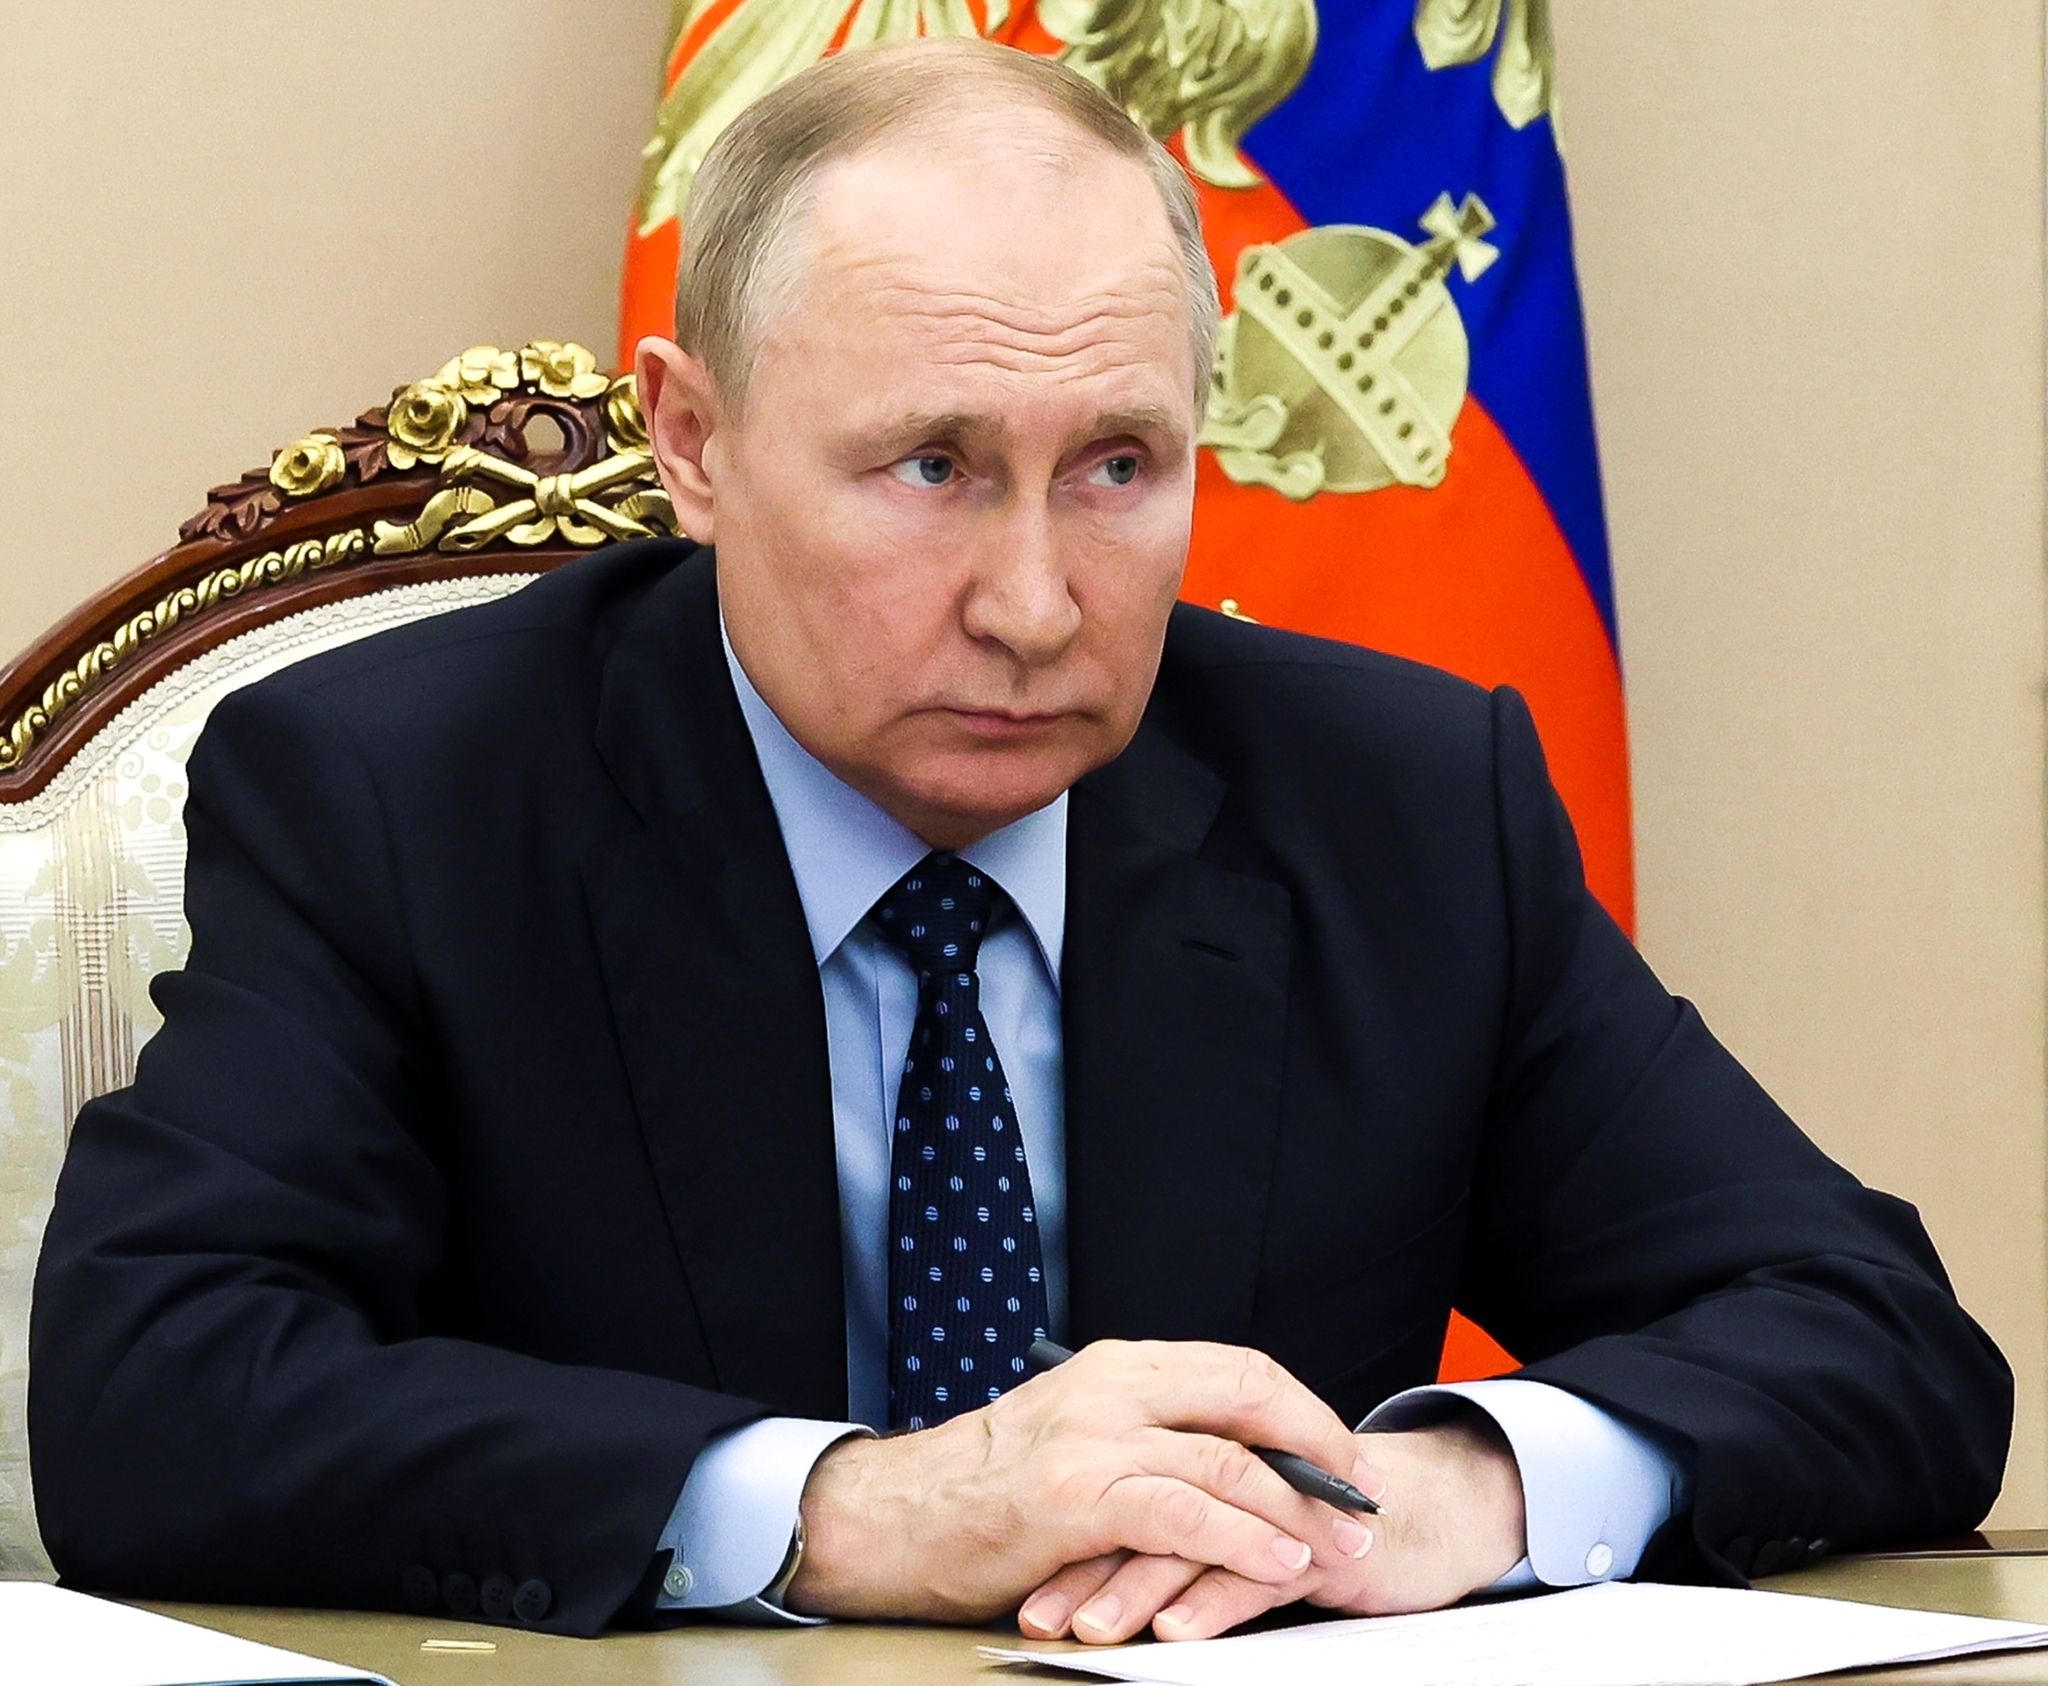 50.000 tote russische Soldaten! Putin greift nun auf ‚Opa-Armee‘ zurück